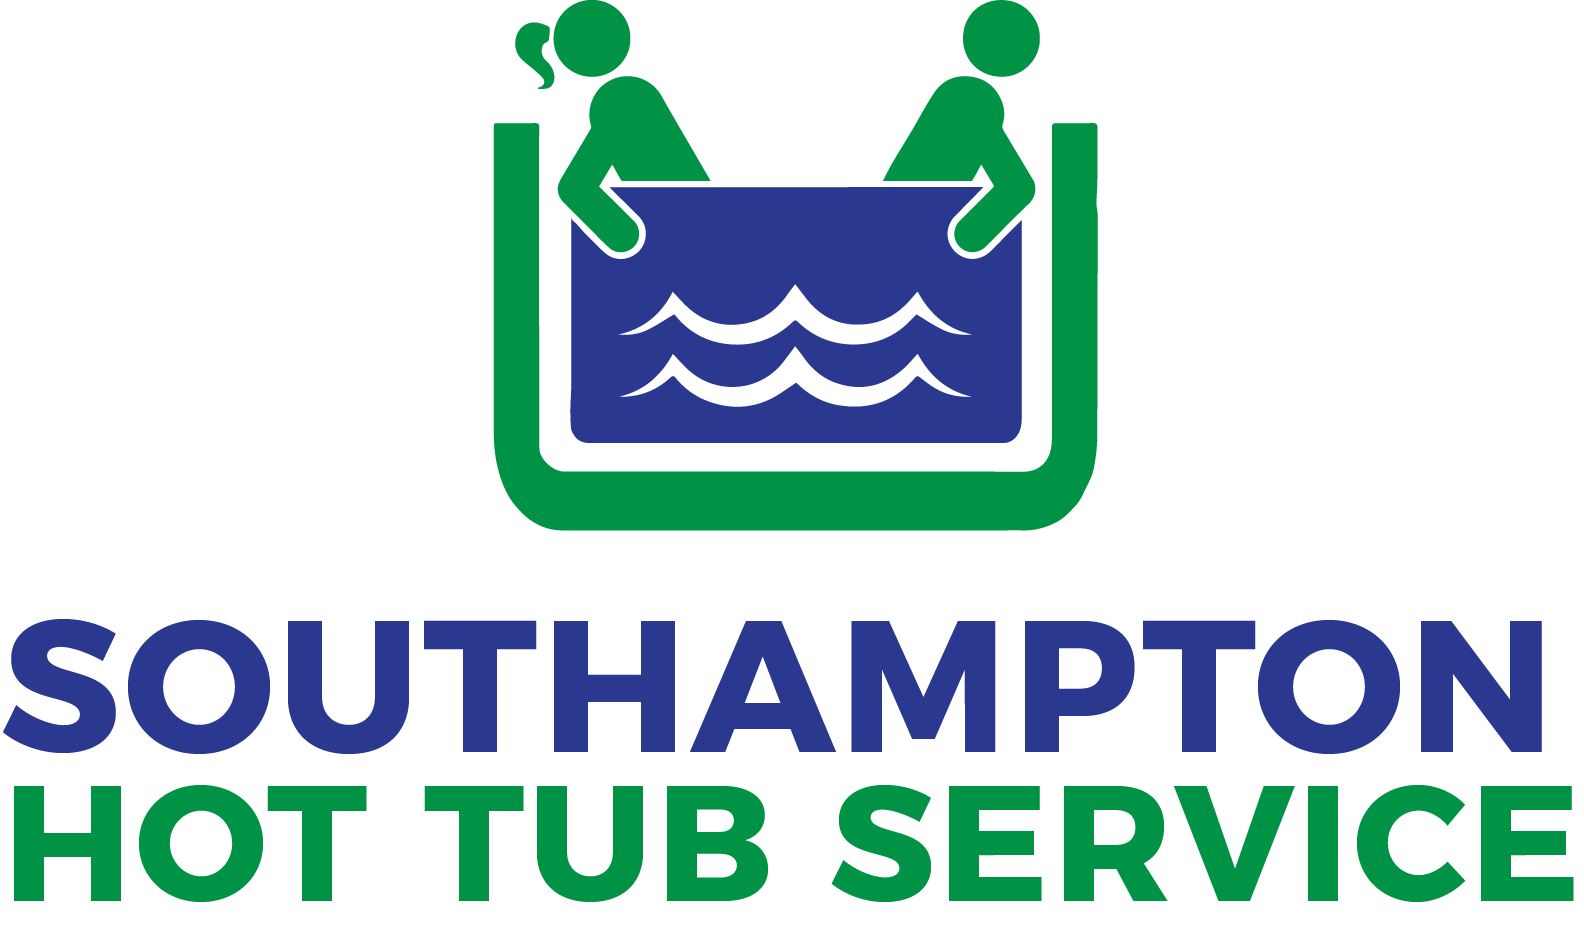 Southampton Hot Tub Service